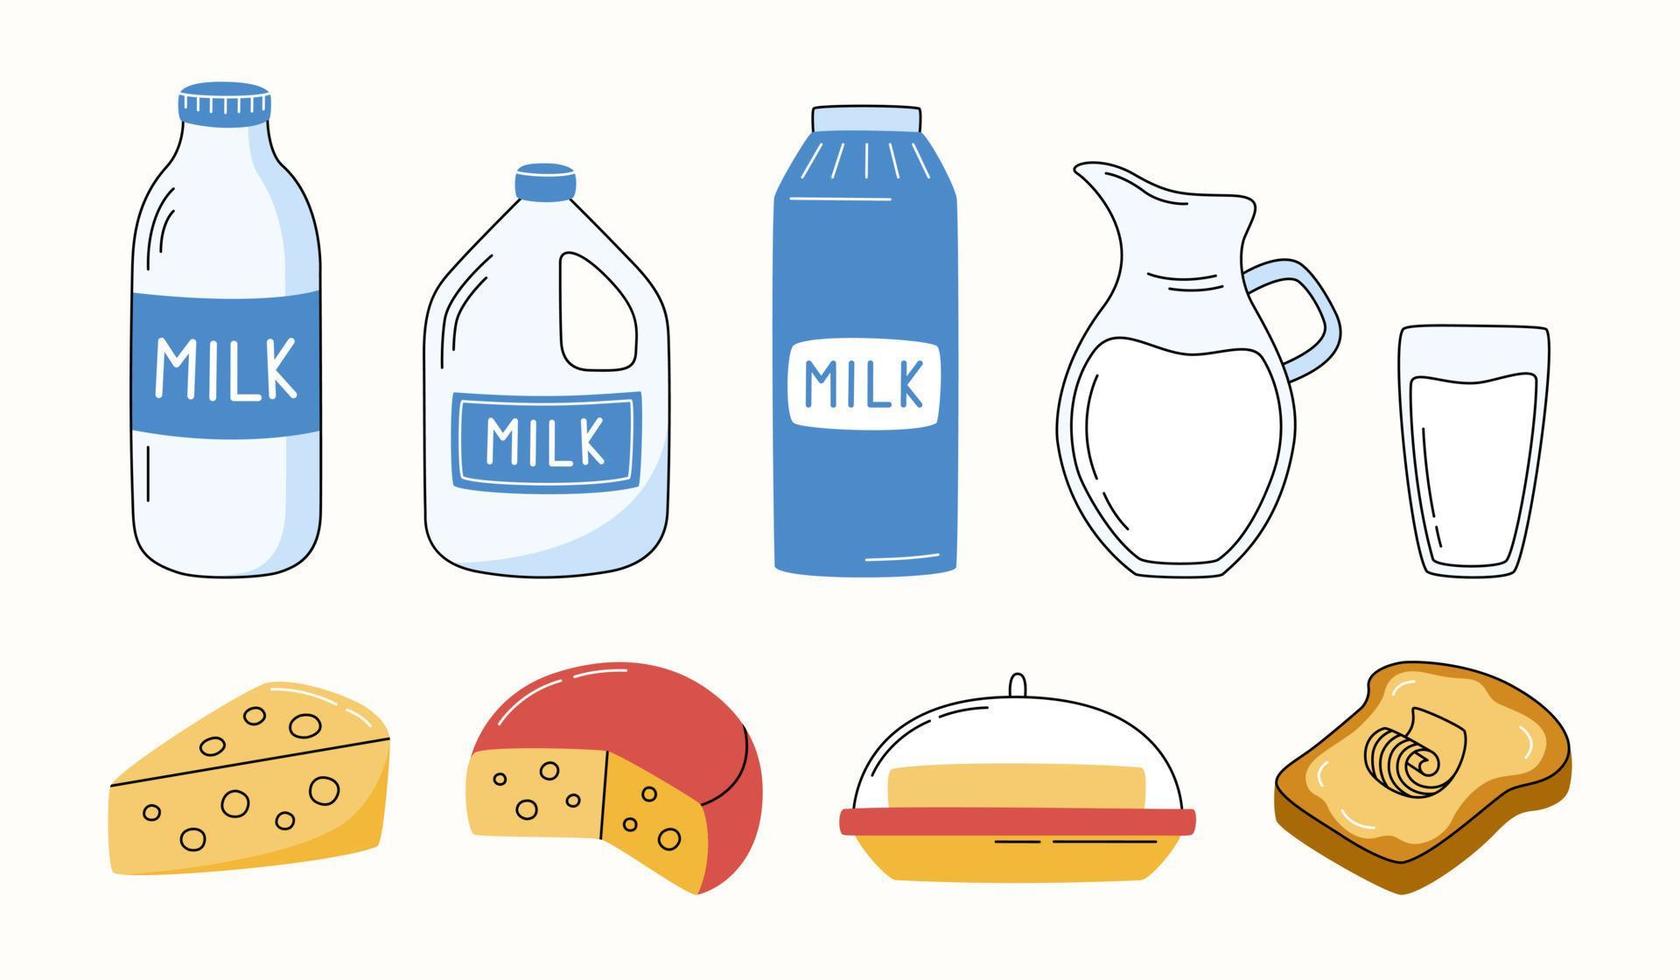 colección de productos lácteos y agrícolas en estilo plano. leche, mantequilla, queso, rebanada de pan. vector